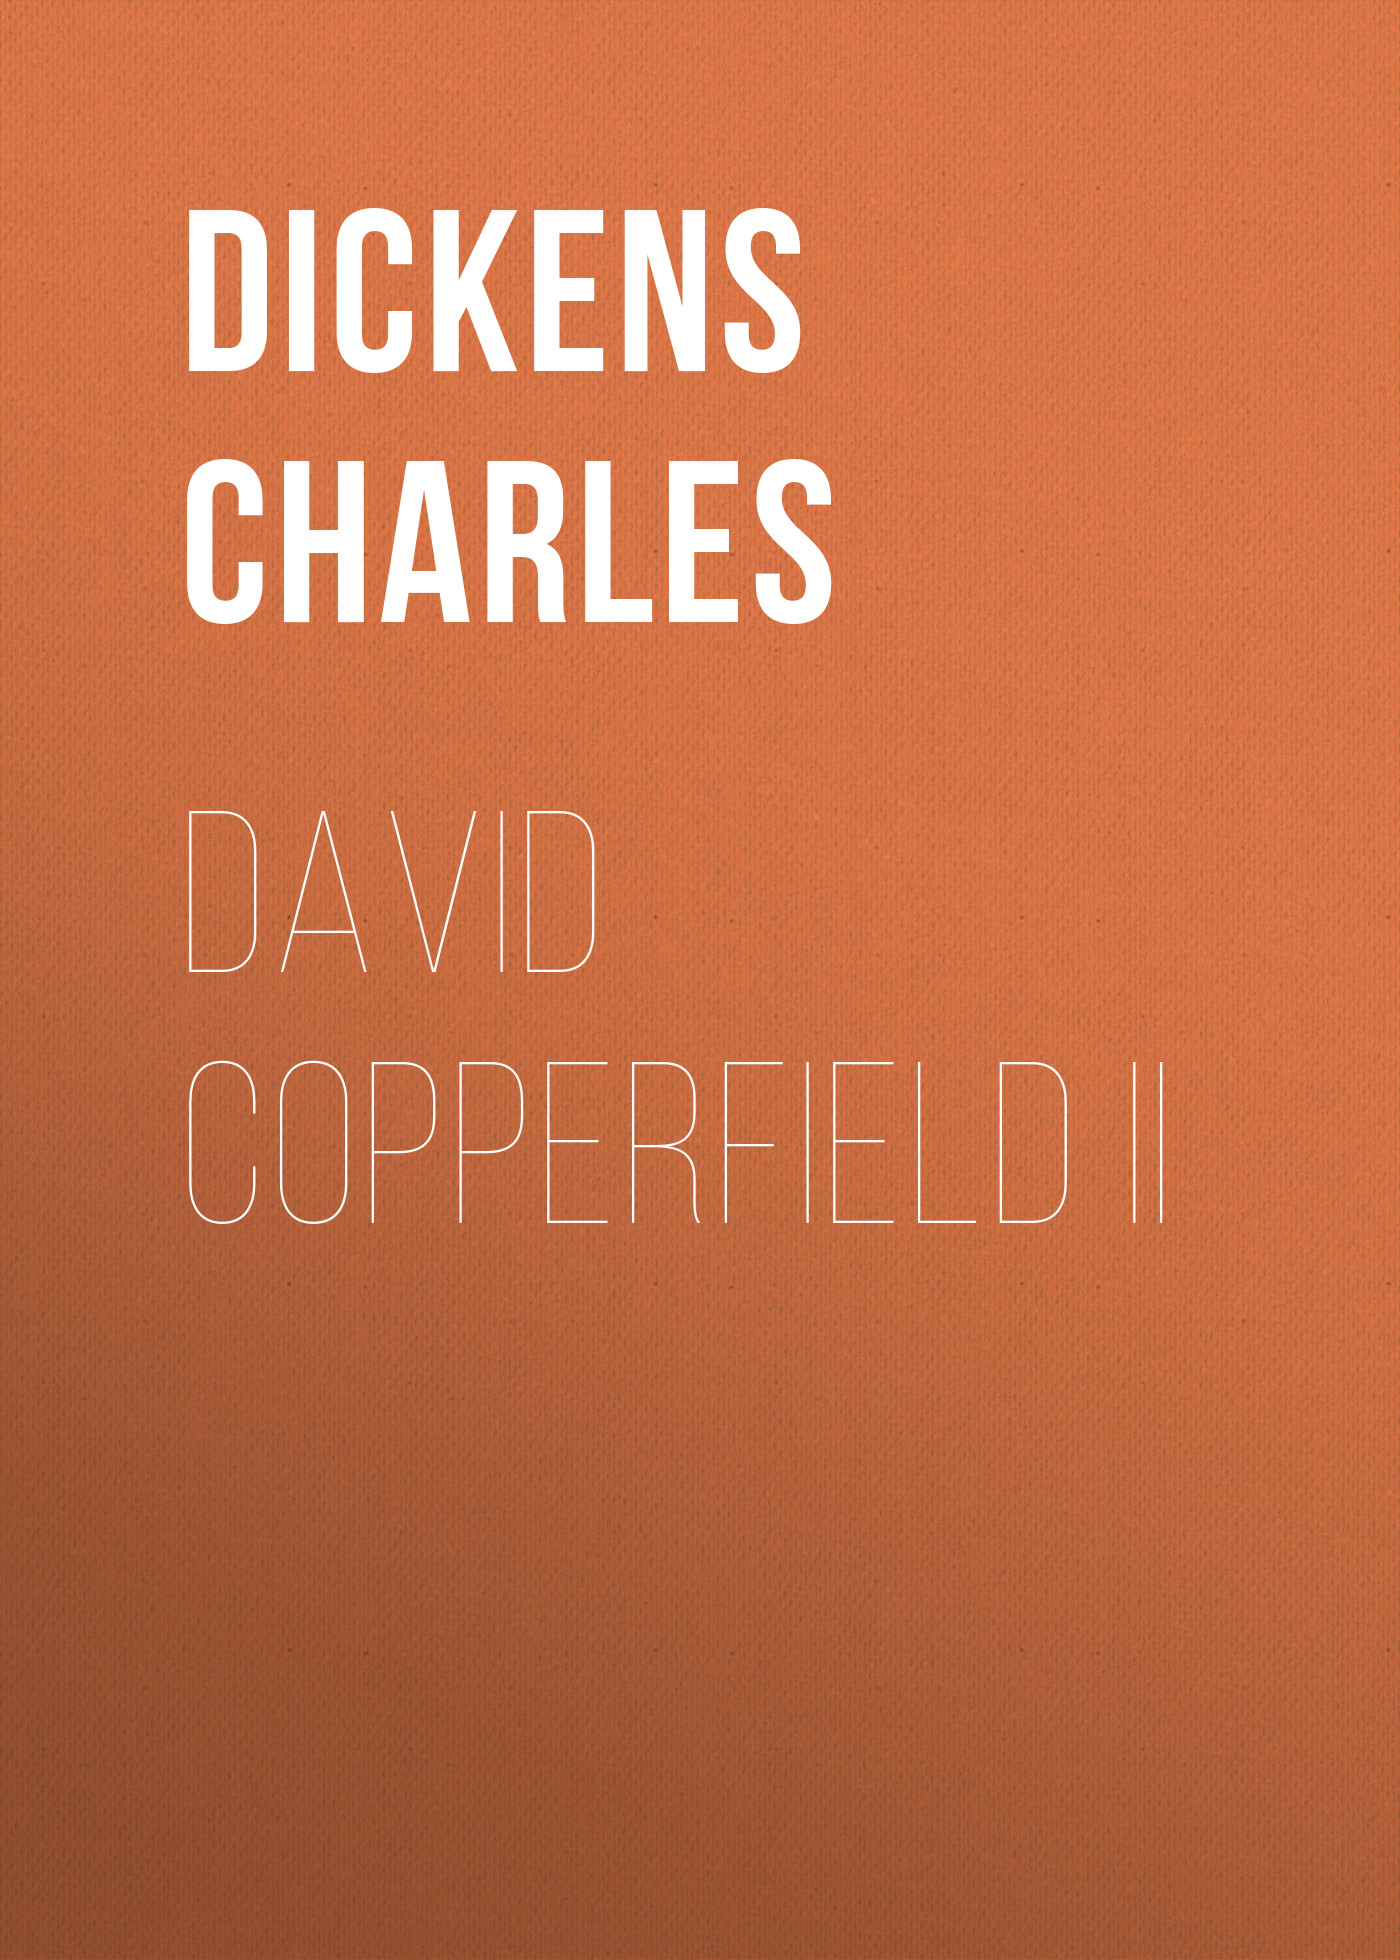 Книга David Copperfield II из серии , созданная Charles Dickens, может относится к жанру Зарубежная старинная литература, Зарубежная классика. Стоимость электронной книги David Copperfield II с идентификатором 25092500 составляет 0 руб.